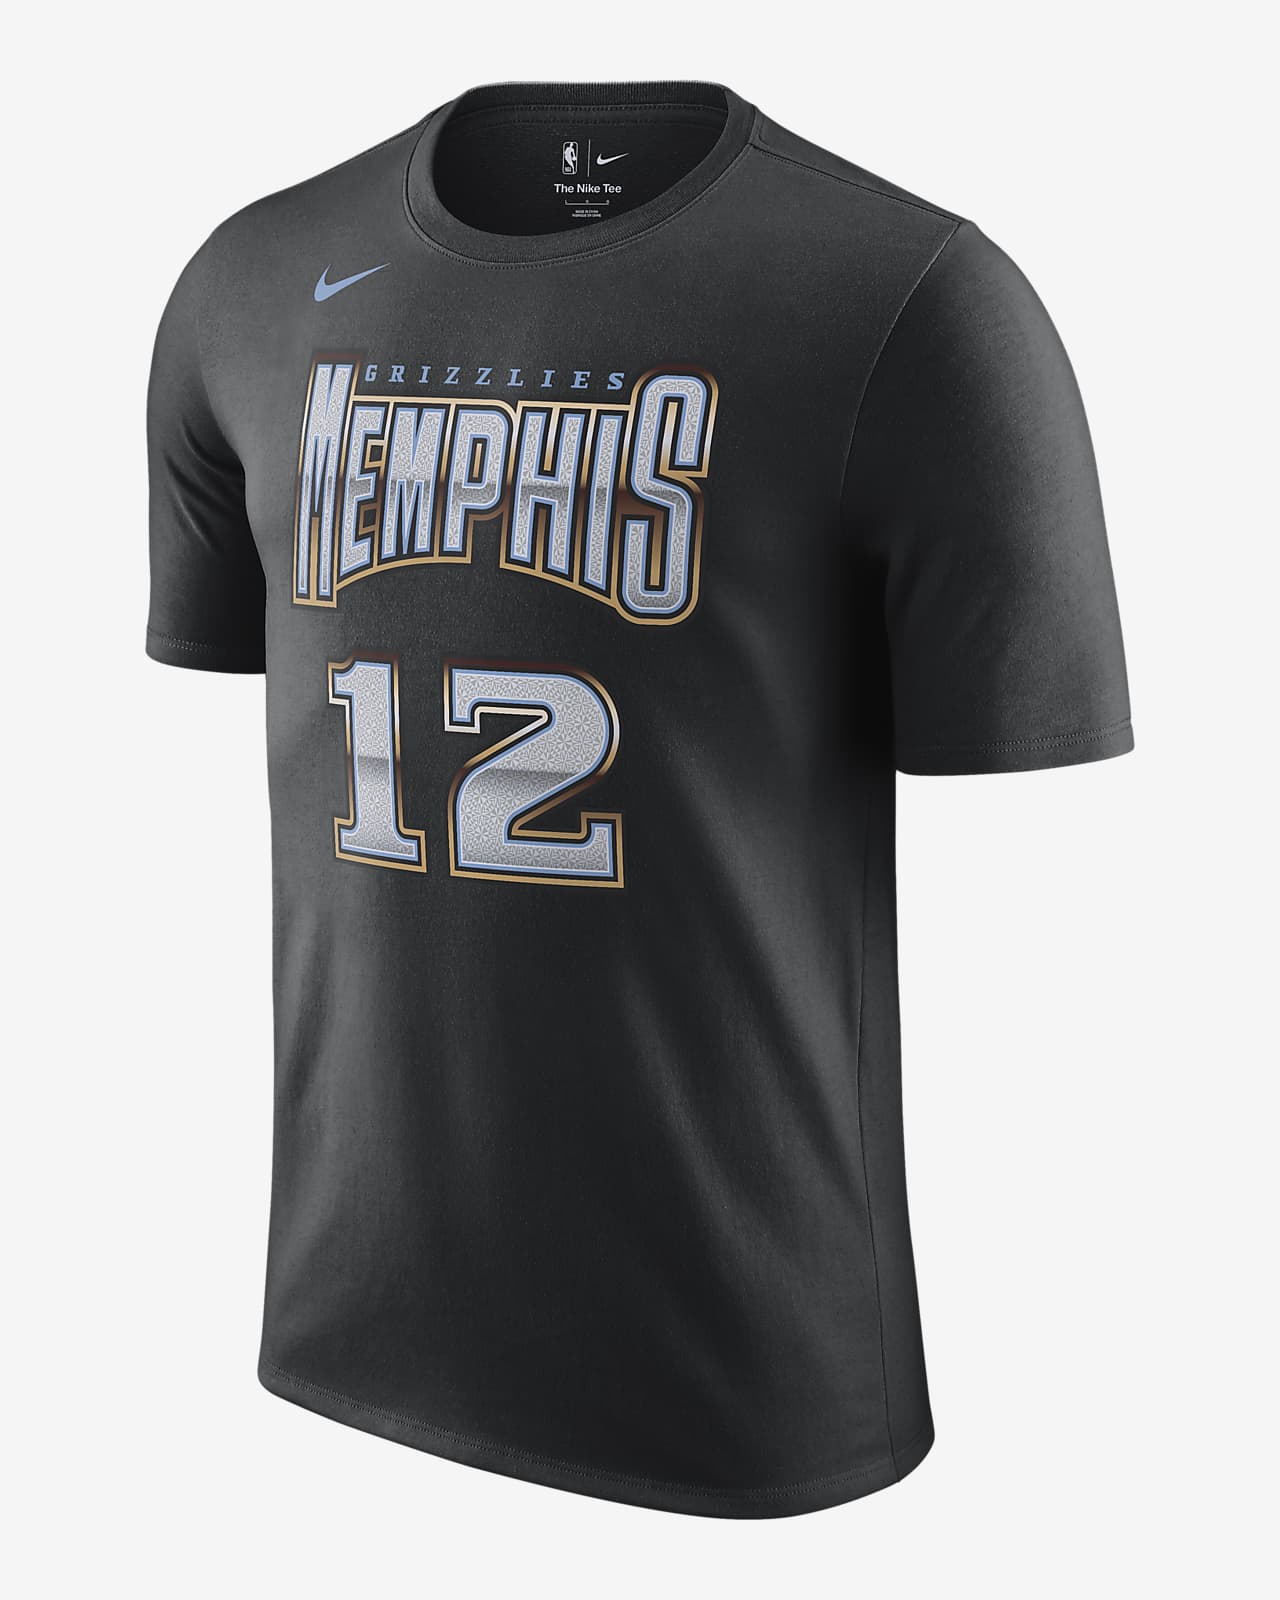 Playera Nike NBA para hombre Memphis Grizzlies City Edition.